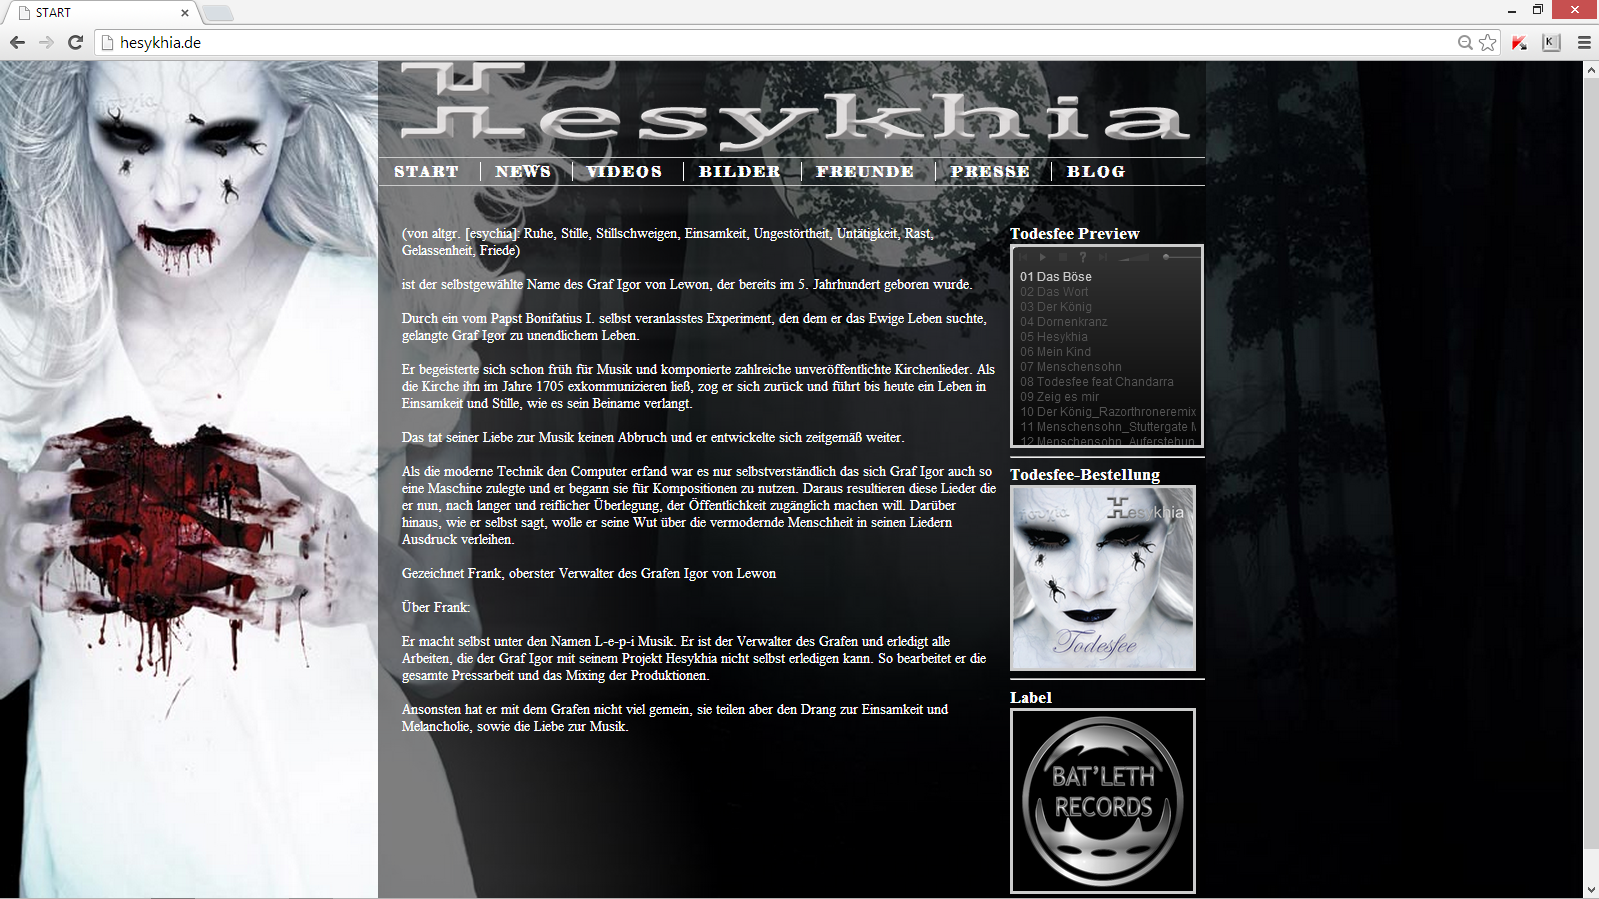 Website von Hesykhia - beim klick kommen Sie auf die Website der Band Hesykhia, die ich erstellt habe.